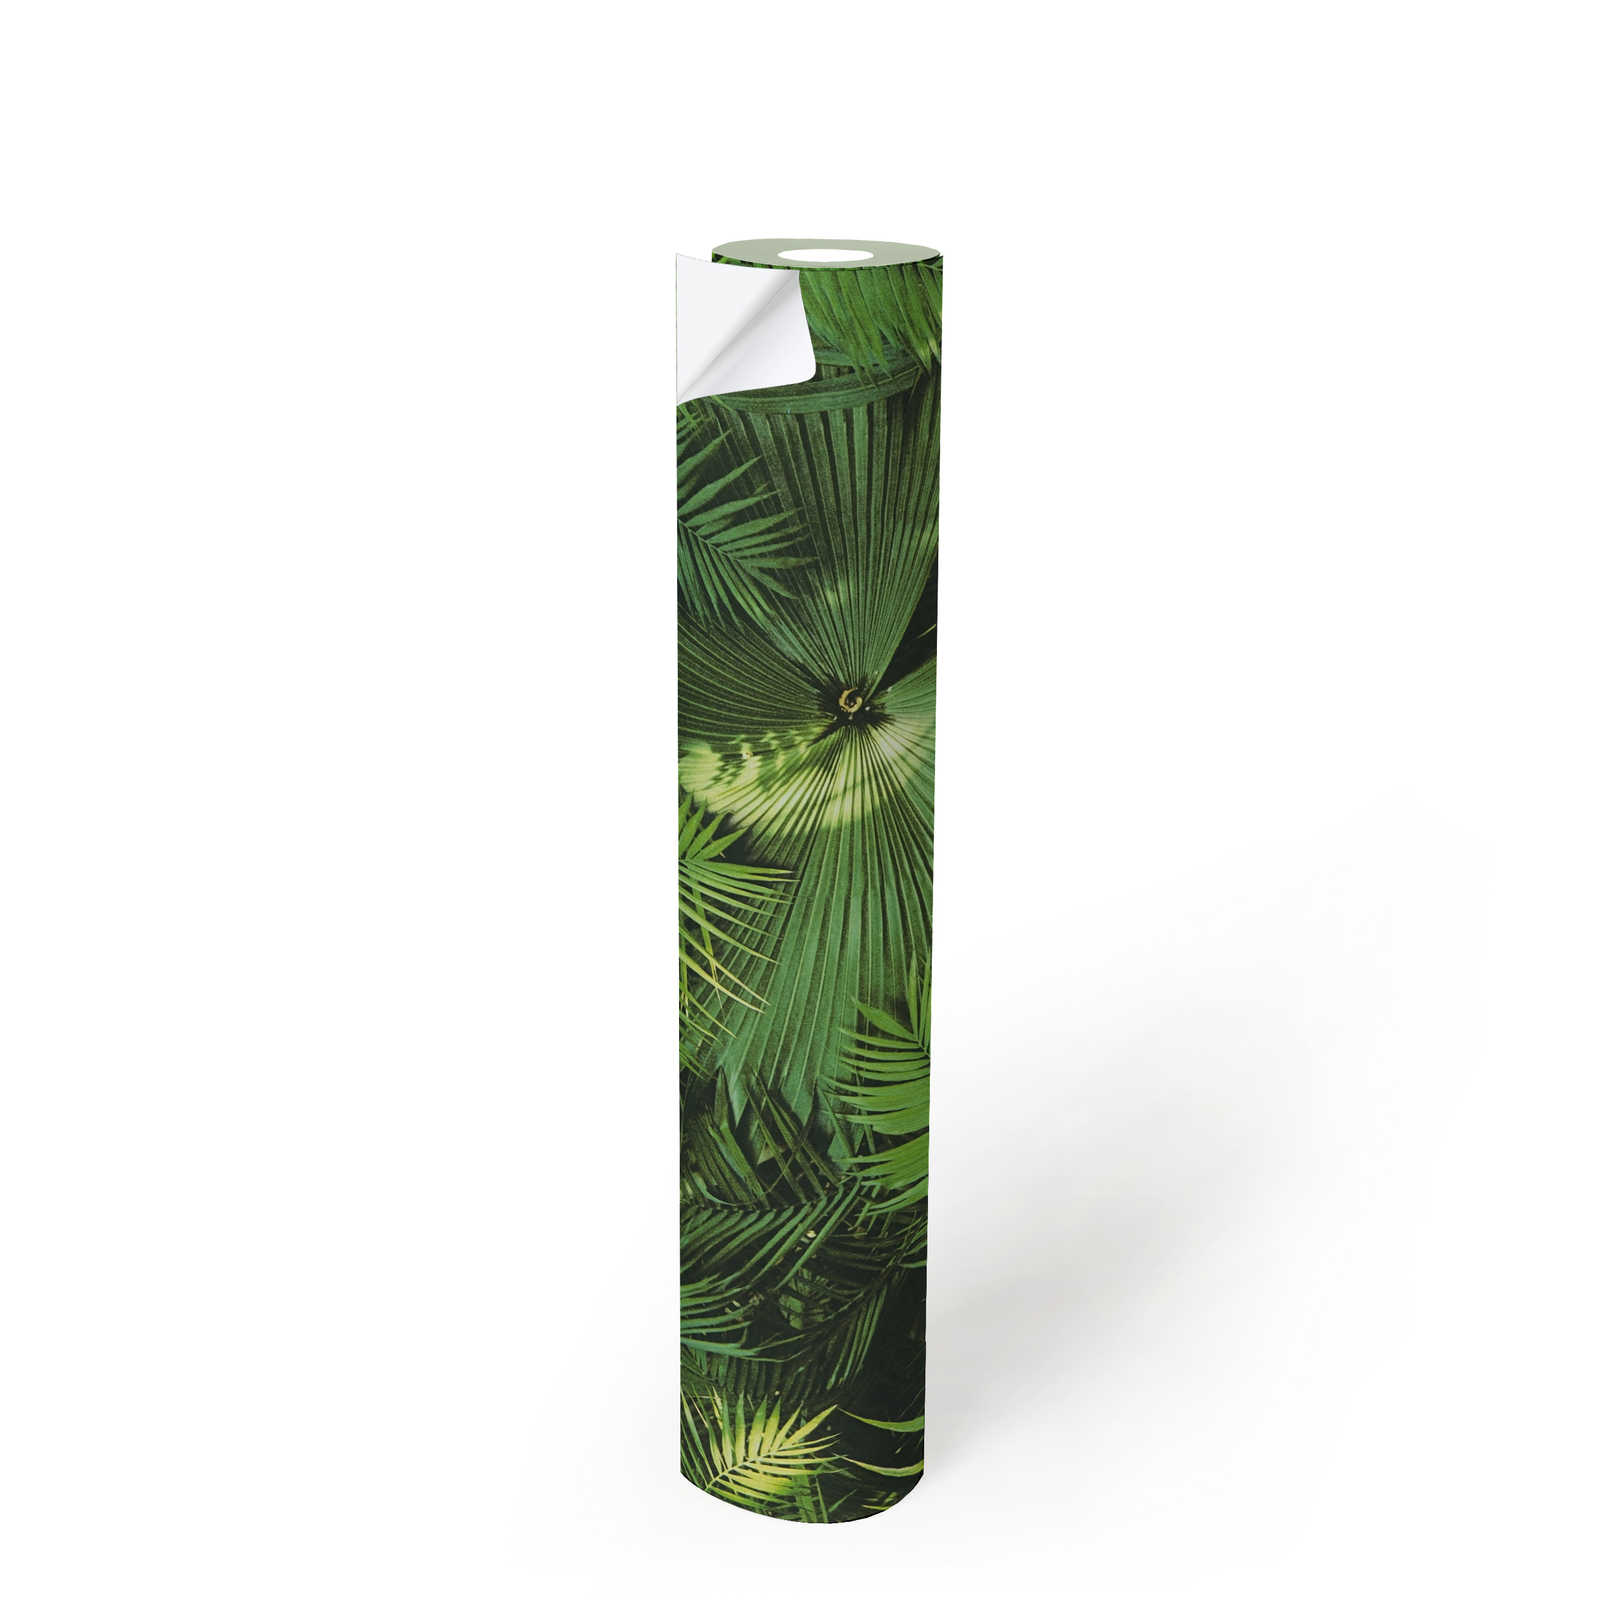             Papier peint autocollant | Feuilles de la jungle motif jungle verte
        